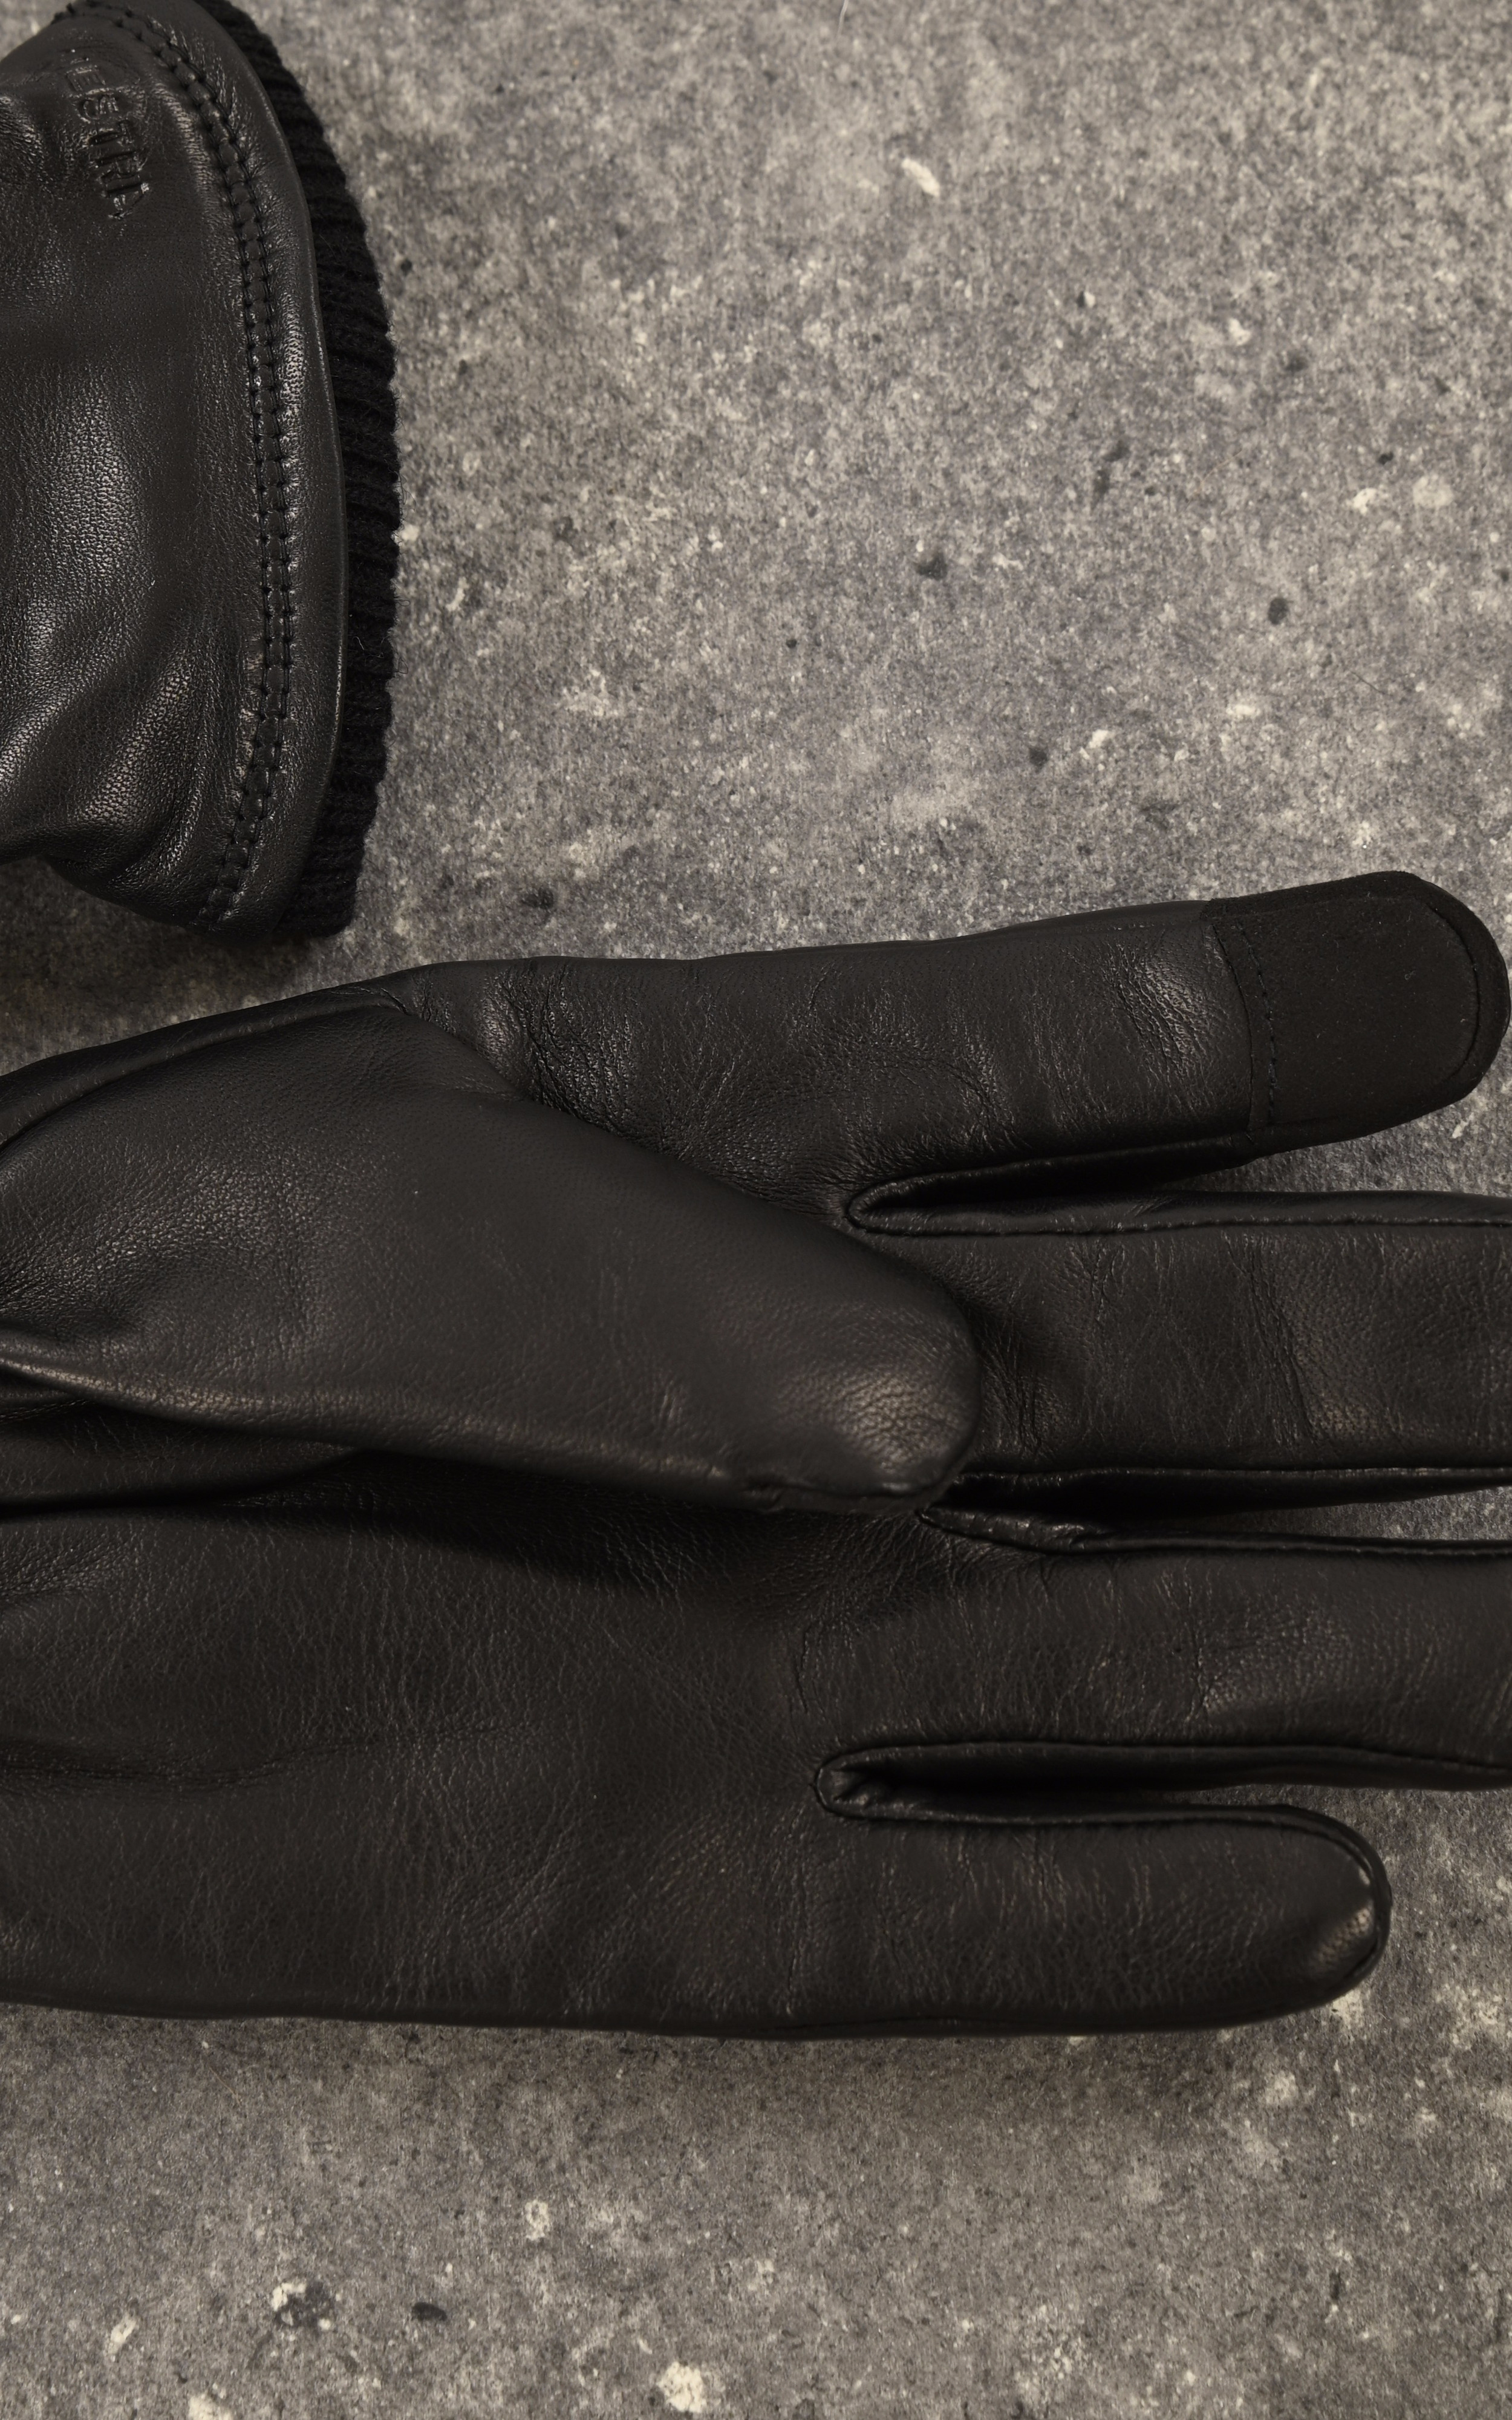 Gants cuir homme noir Hestra - La Canadienne - Accessoires Cuir Noir